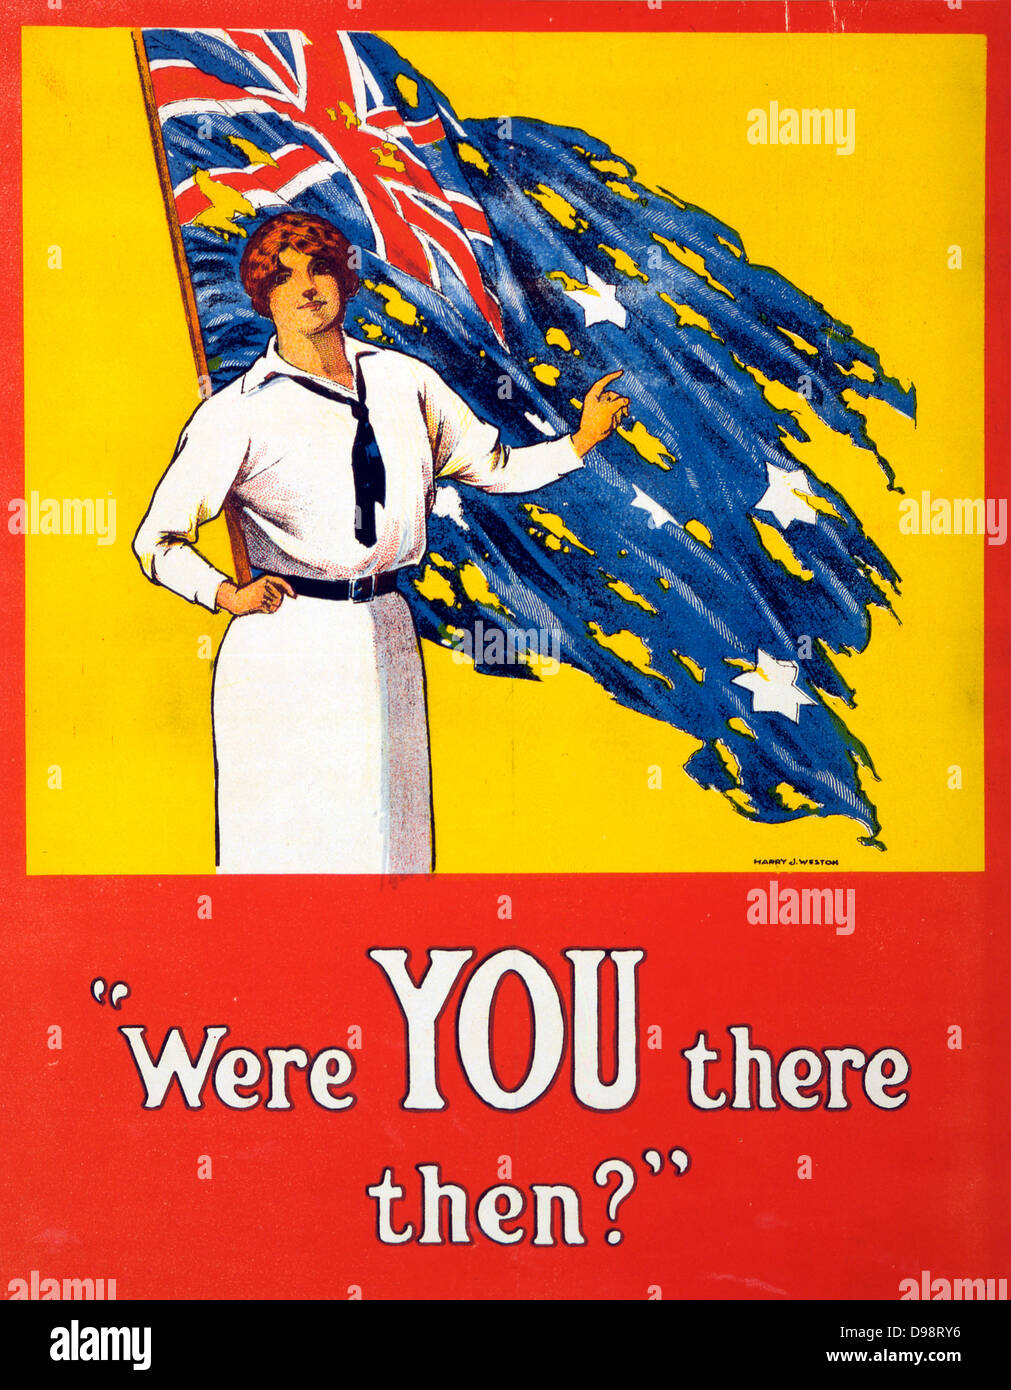 I Guerra Mondiale 1914-1918: "Siete stati lì allora?' Poster, 1916. La donna si trova di fronte strappati bandiera australiana chiedendo la questione. Battaglia di Fromelles, fronte occidentale, Francia, 19-20 luglio 1915, Australia subito 5,533 vittime. Foto Stock